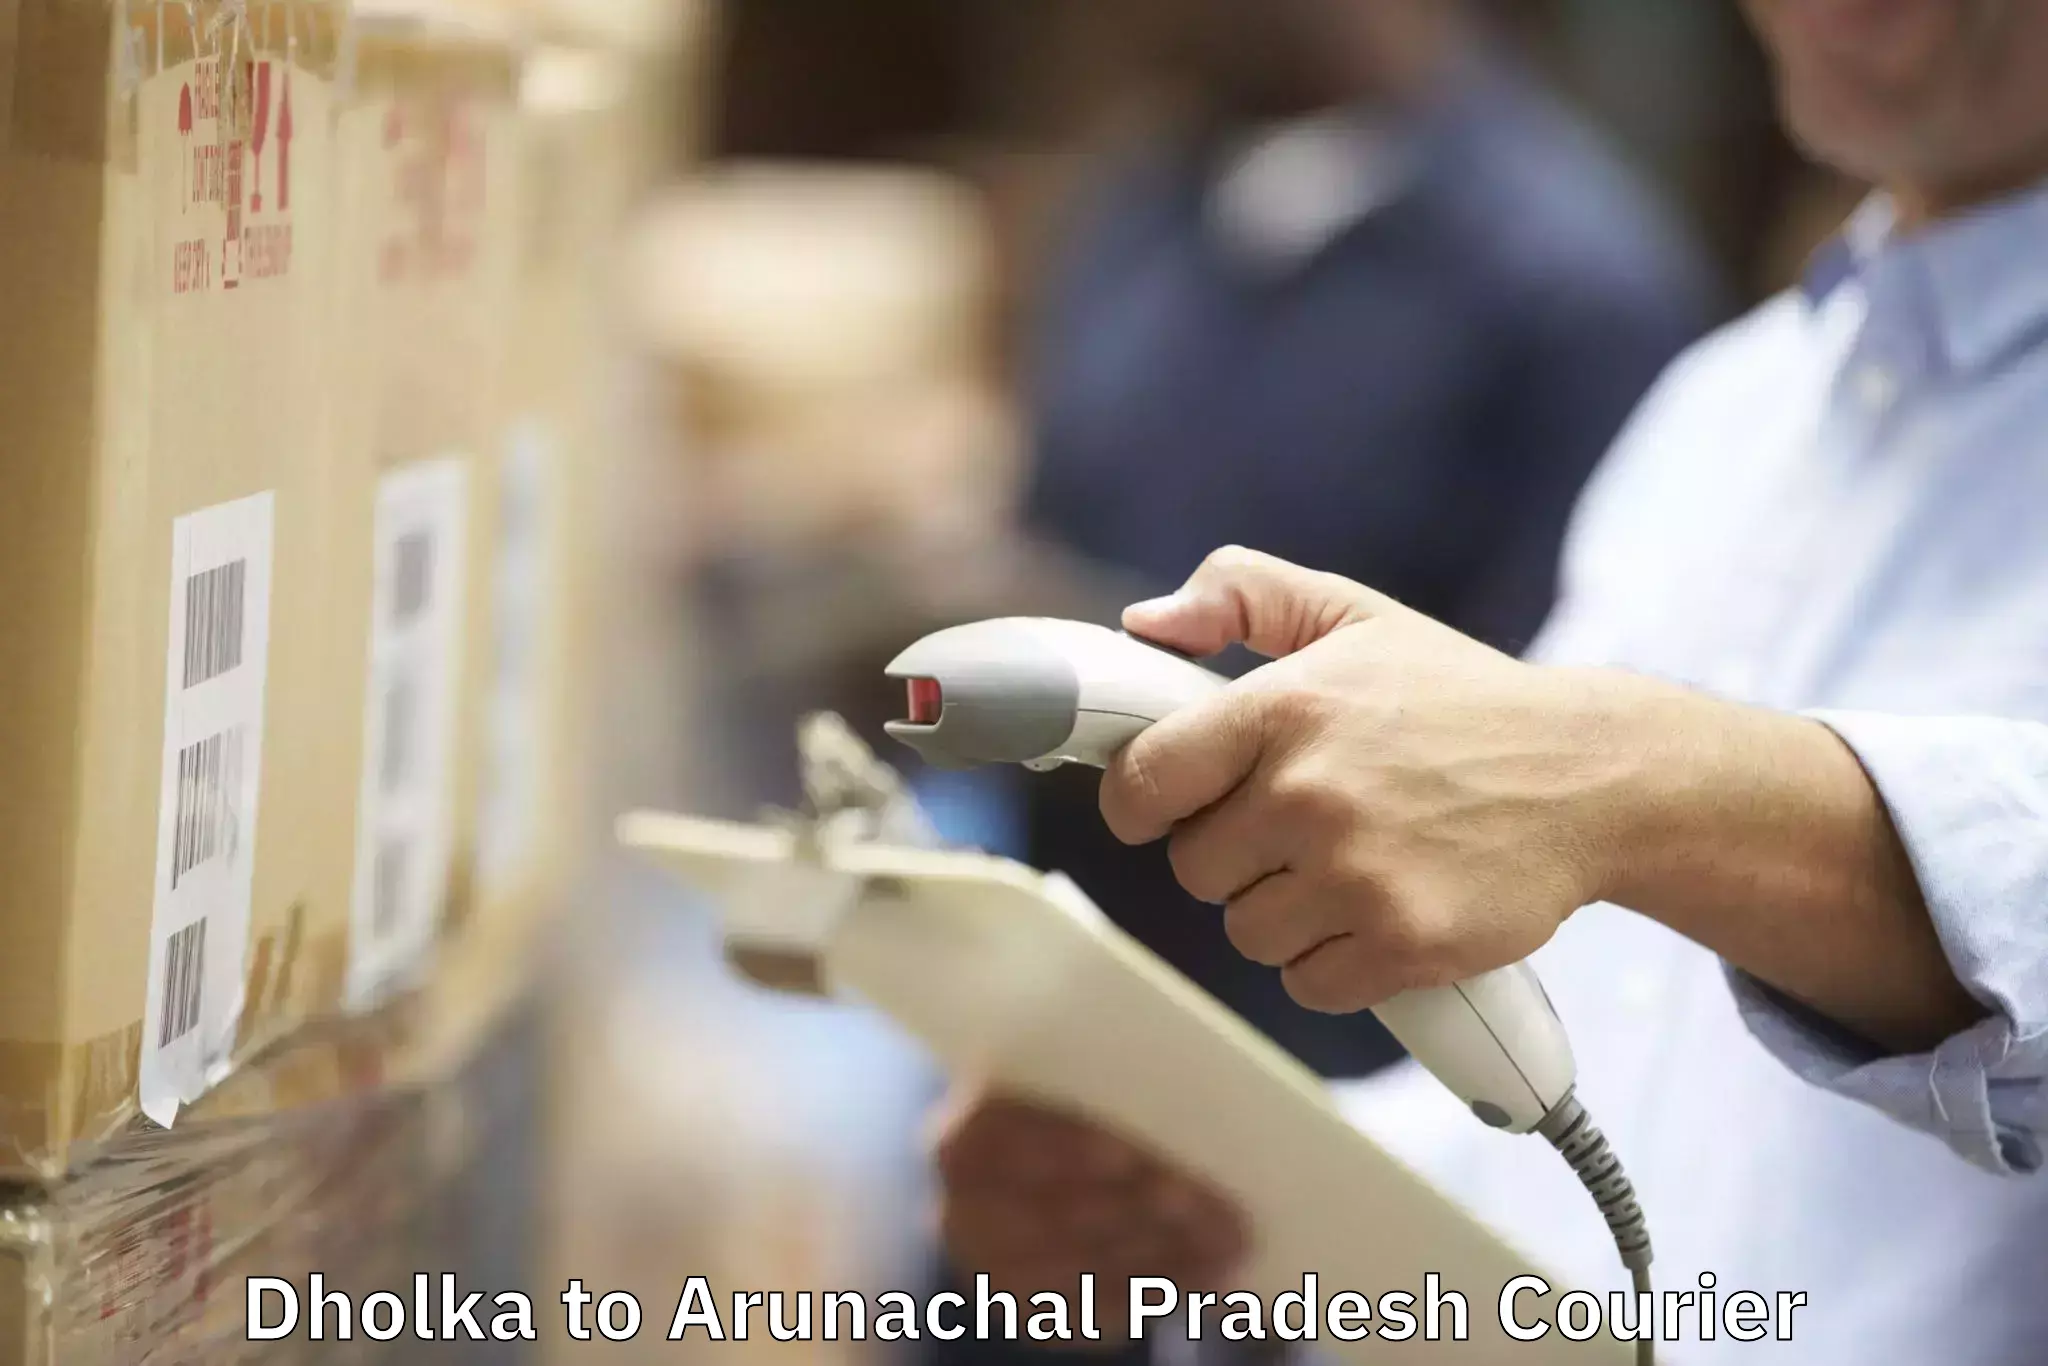 Furniture moving services Dholka to Arunachal Pradesh